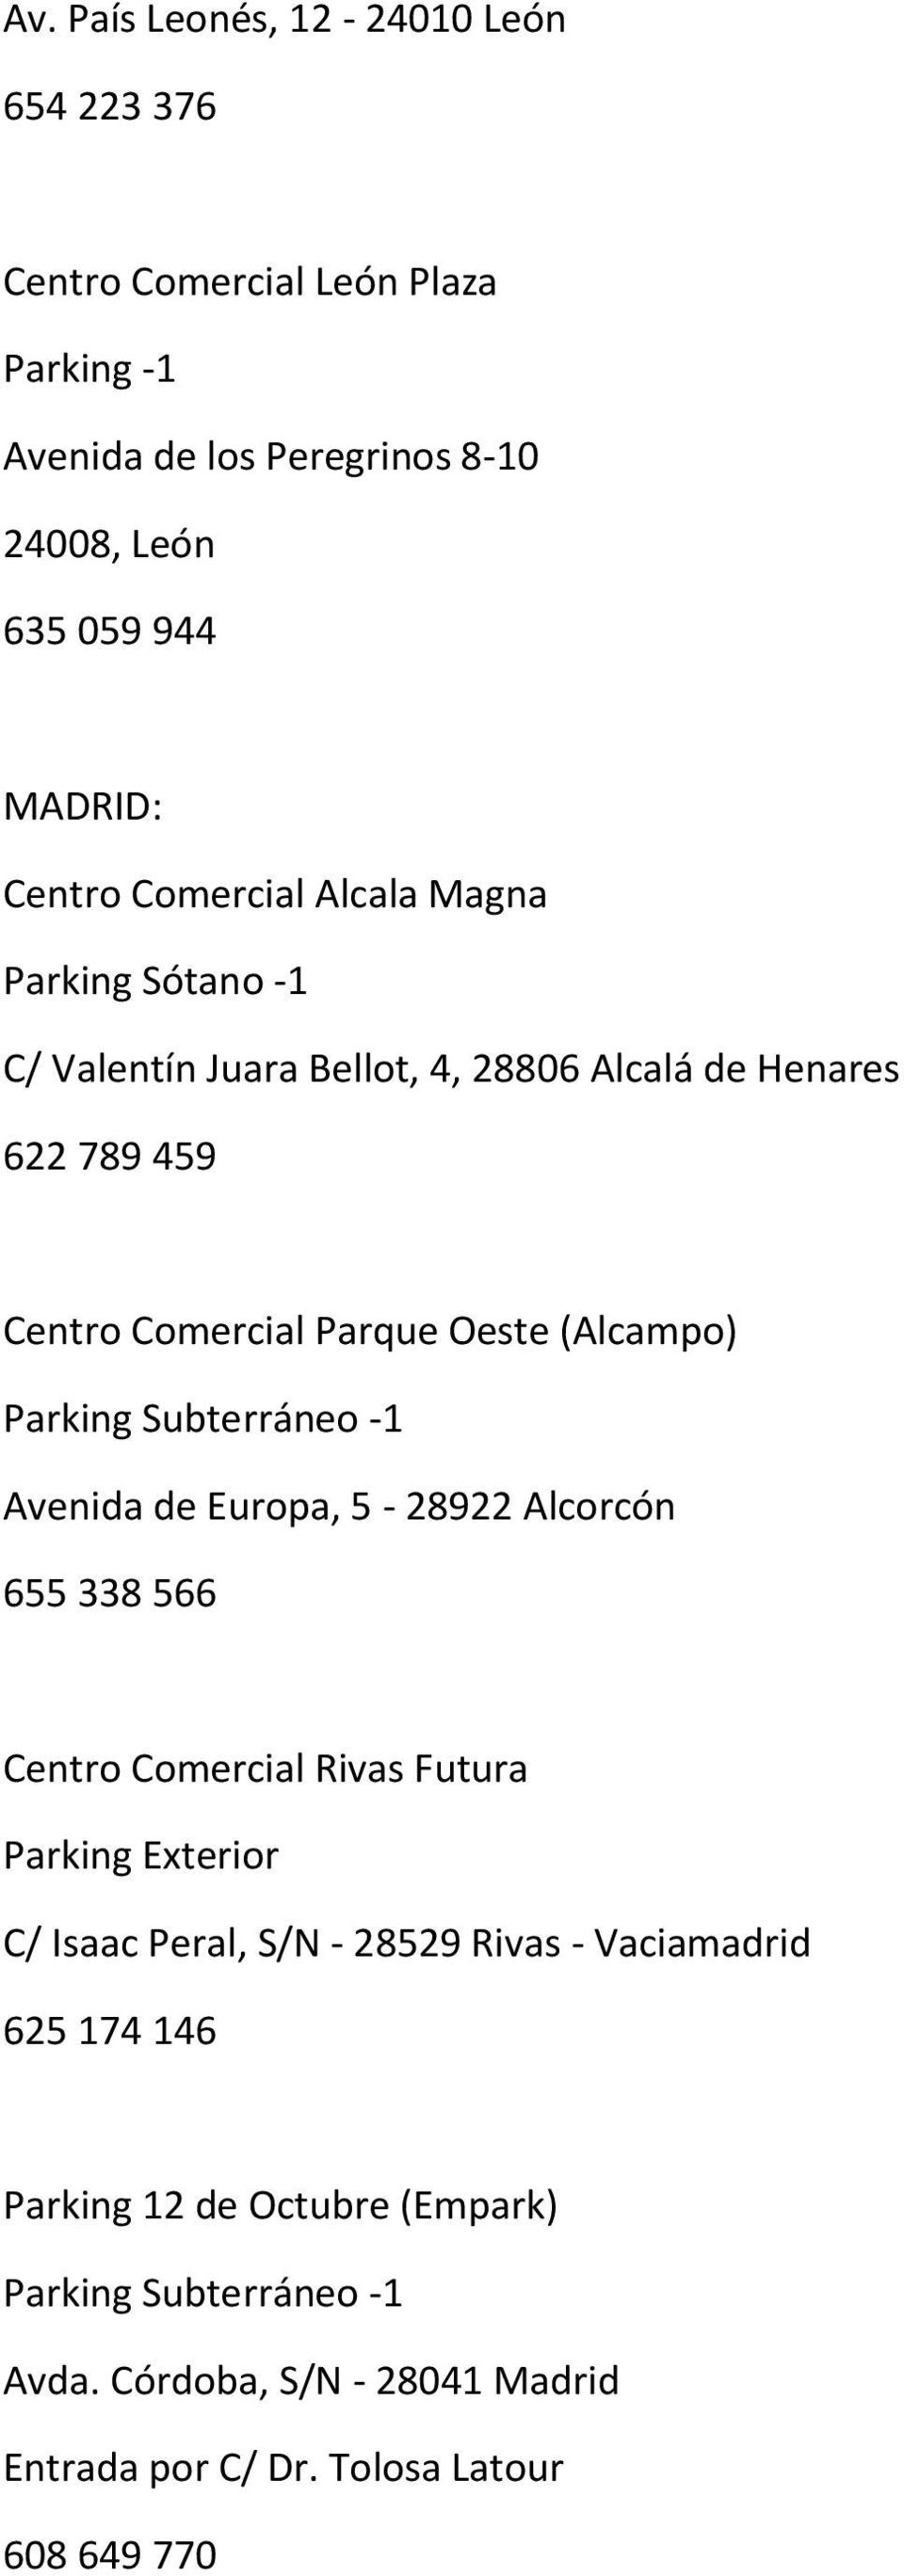 Parque Oeste (Alcampo) Avenida de Europa, 5-28922 Alcorcón 655 338 566 Centro Comercial Rivas Futura Parking Exterior C/ Isaac Peral, S/N -